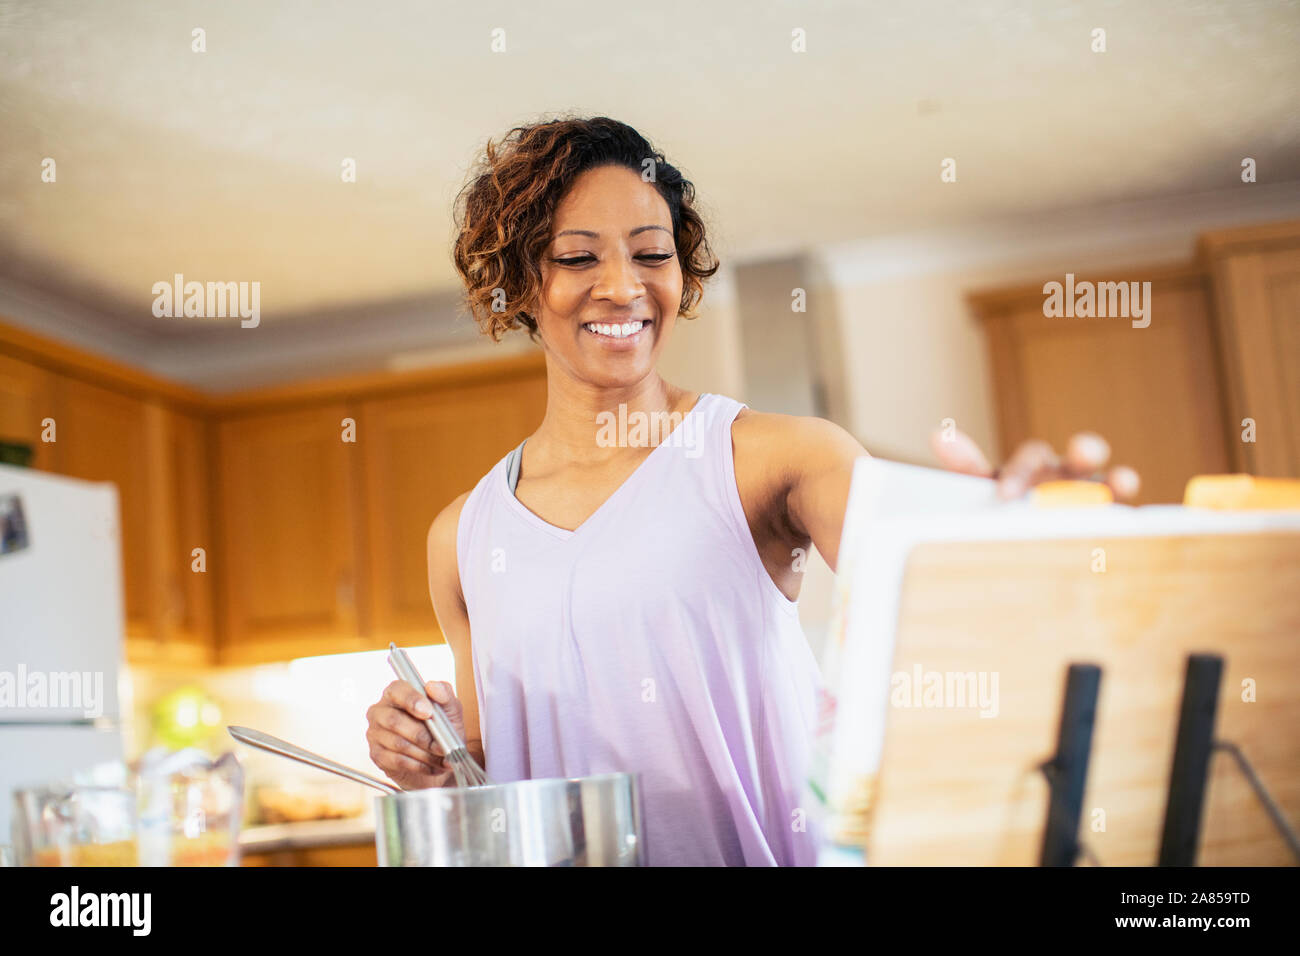 Lächelnde Frau mit Kochbuch Kochen in der Küche Stockfoto